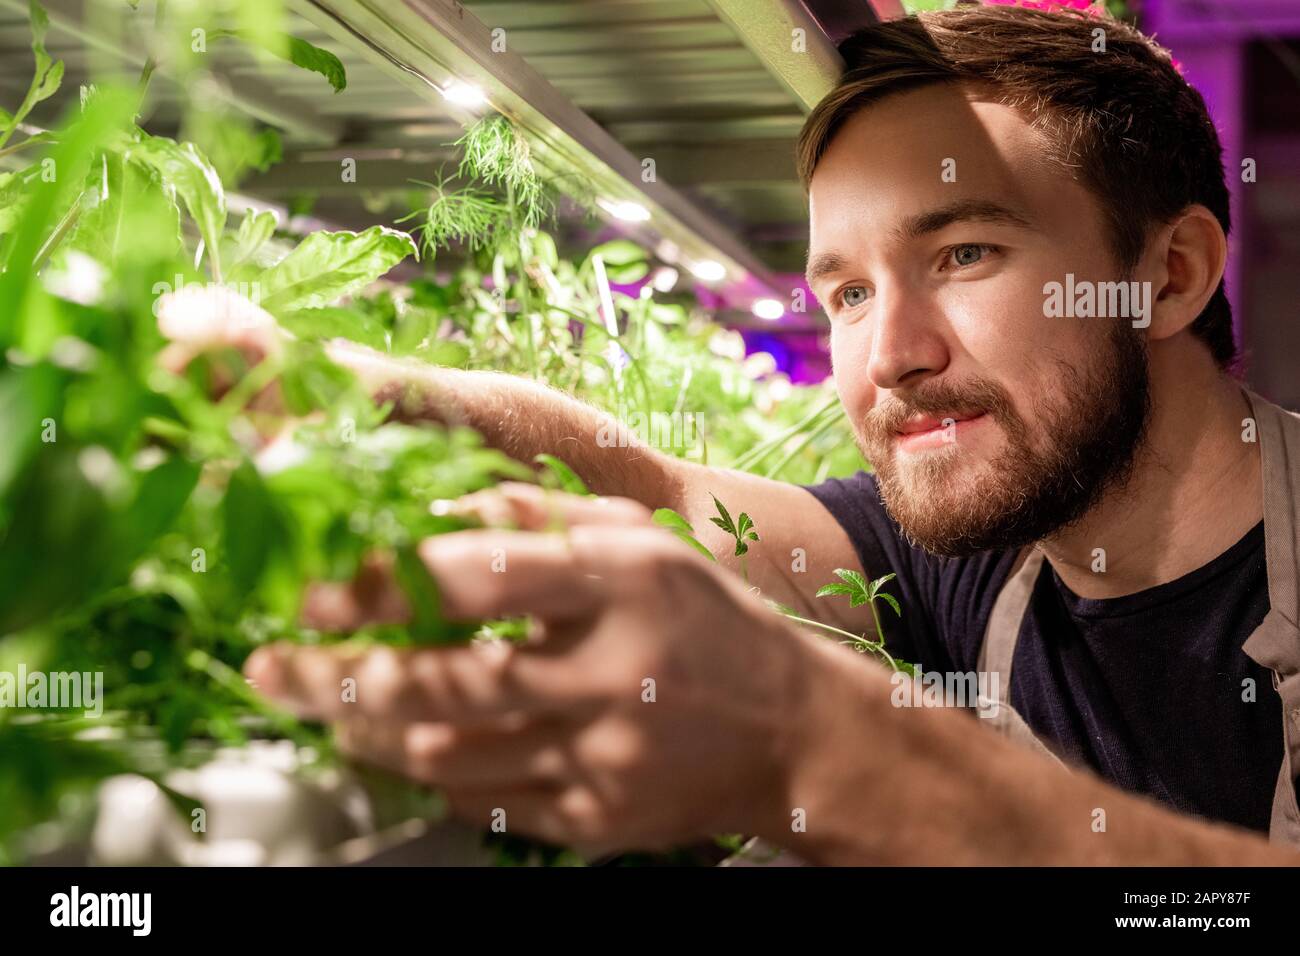 Jeune sélectionneur ou jardinier barbu regardant un nouveau type de verdure Banque D'Images